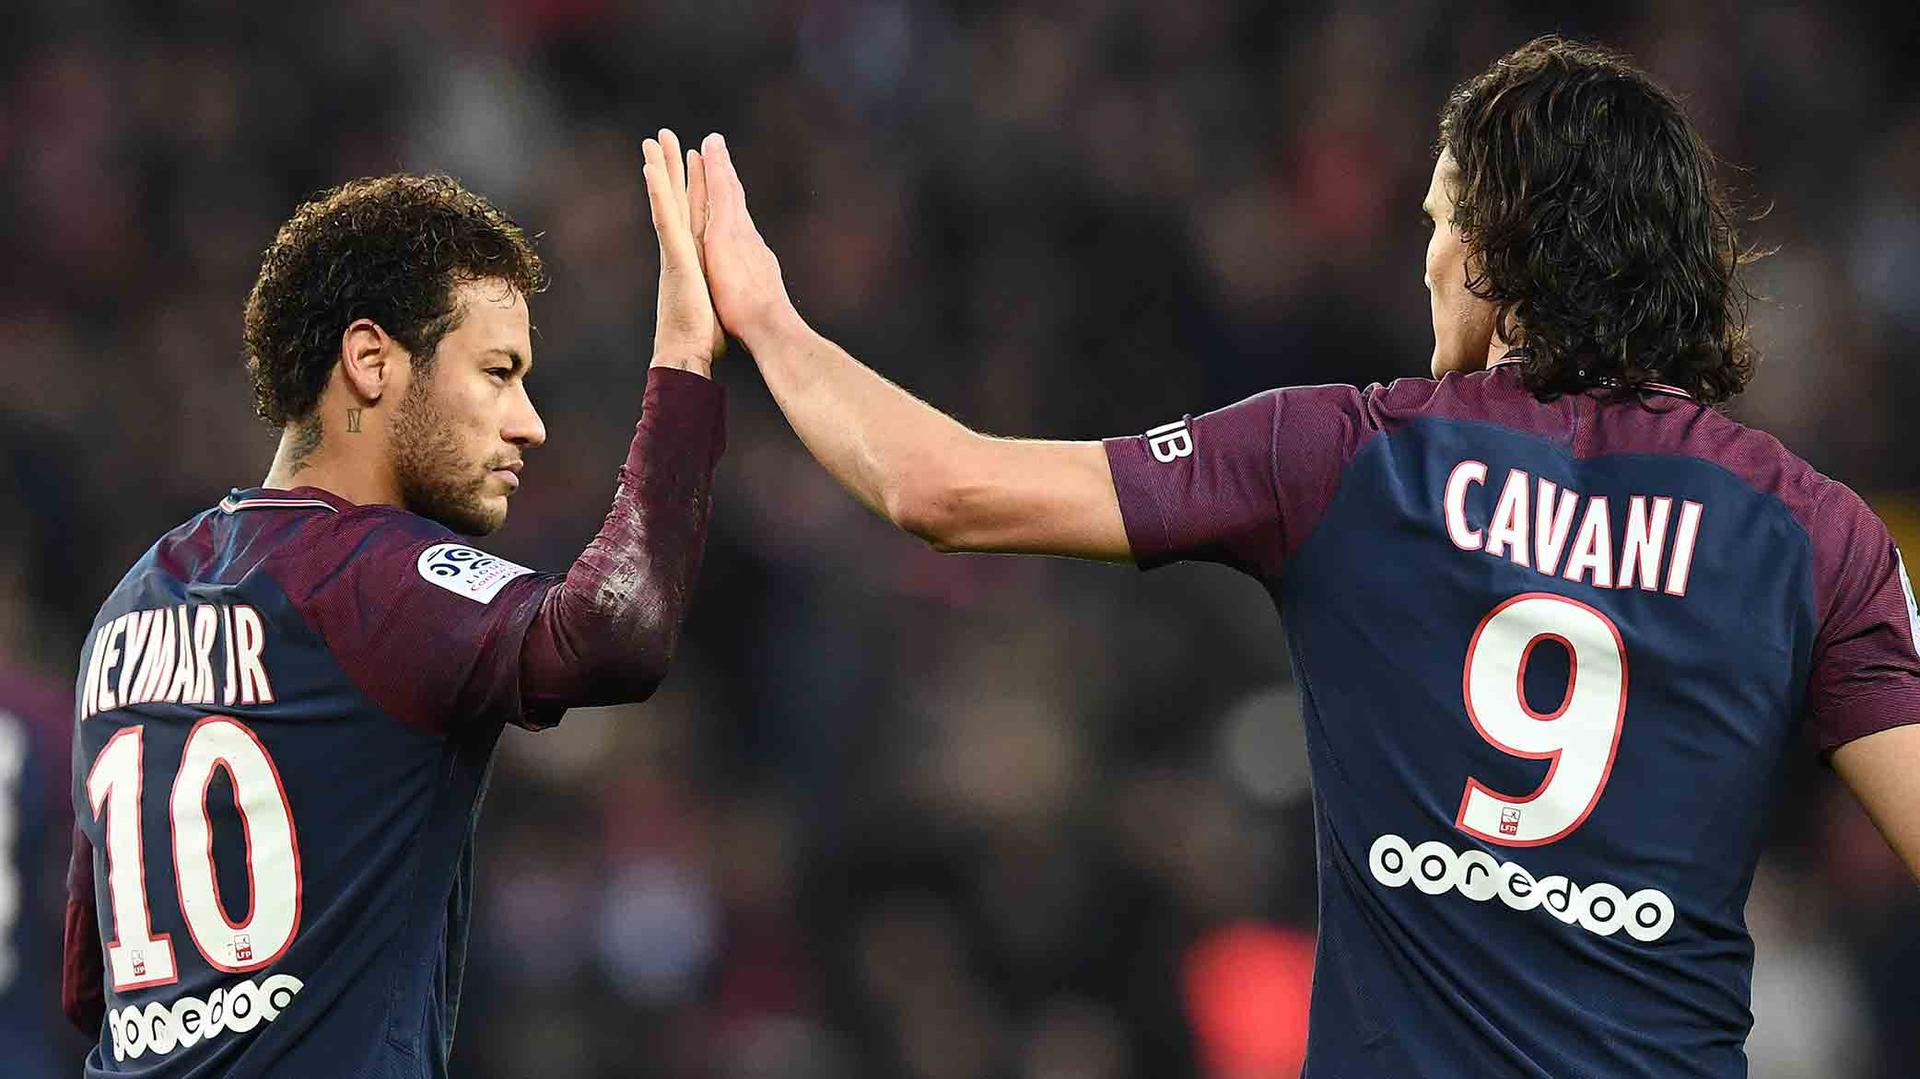 No sábado, Neymar e Cavani brilharam diante do Montpellier, pelo Campeonato Francês. O camisa 10 fez dois gols, além de ver Cavani tornar-se o maior artilheiro isolado da história do PSG (157 gols). Antes em atrito, a dupla tem se entendido muito bem dentro de campo&nbsp;